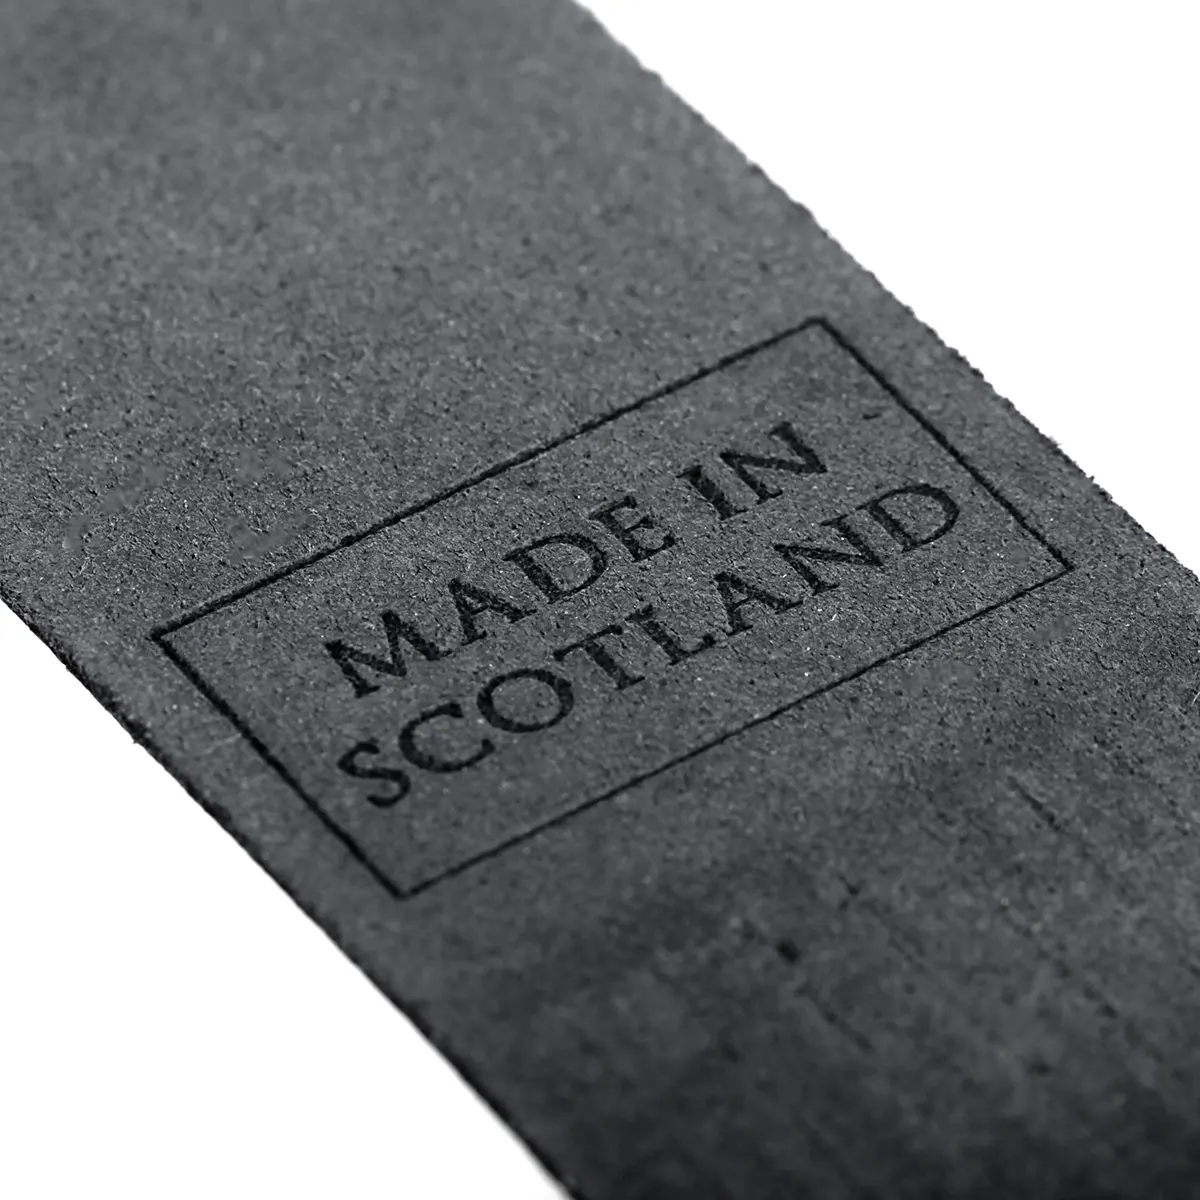 Inveraray - Lesezeichen aus Leder in Schwarz - Made in Scotland